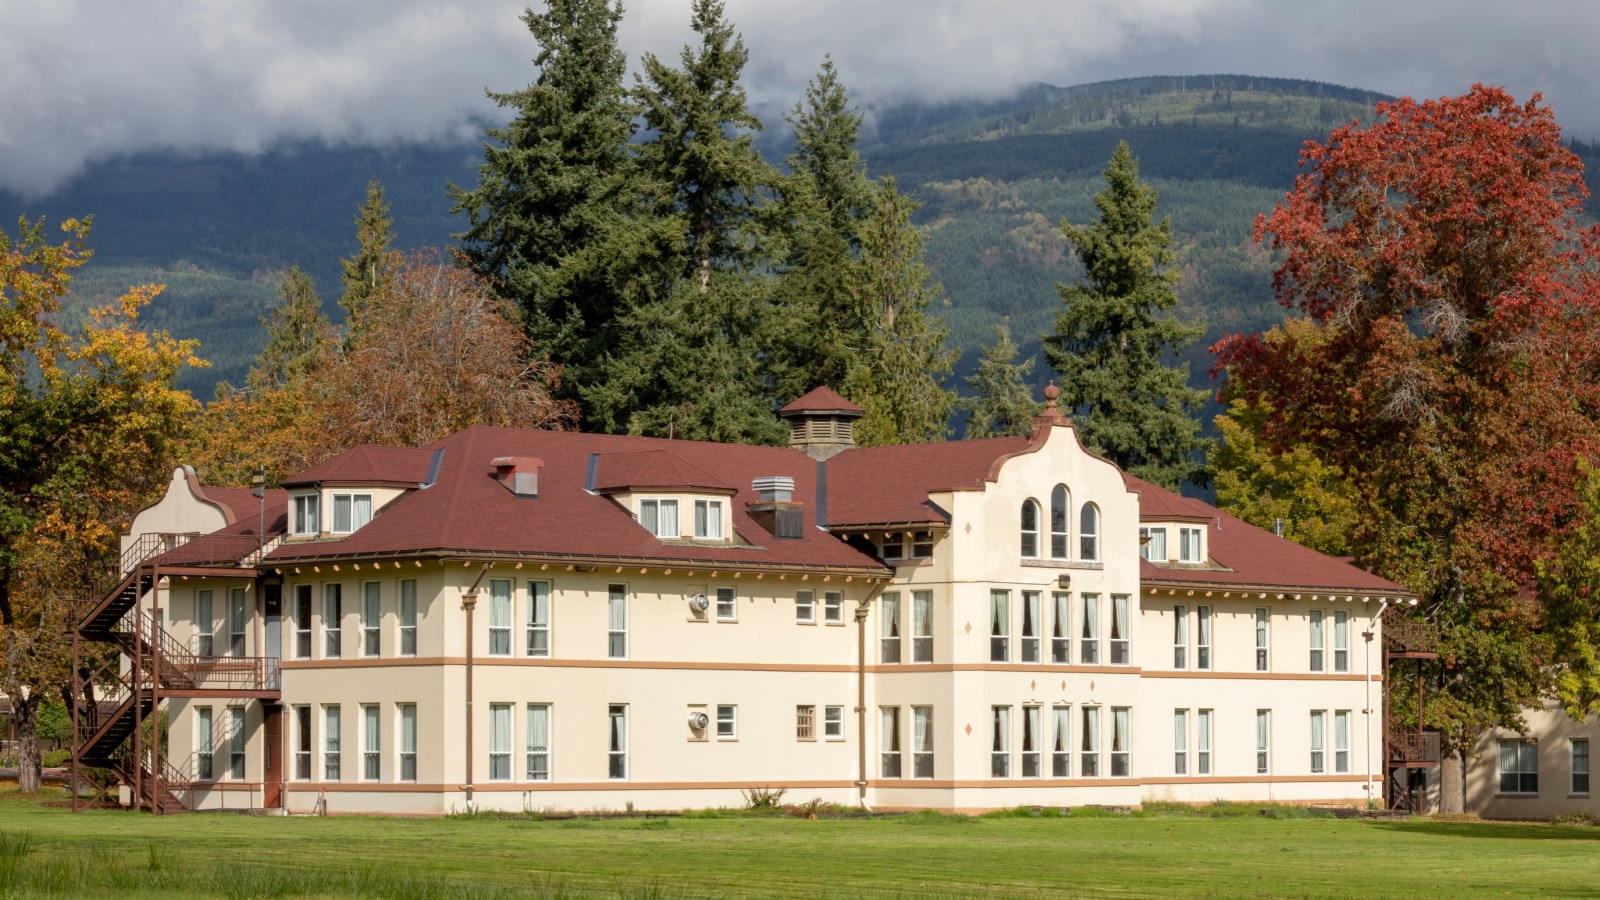 Haunted Mental Hospital at Northern State, Washington